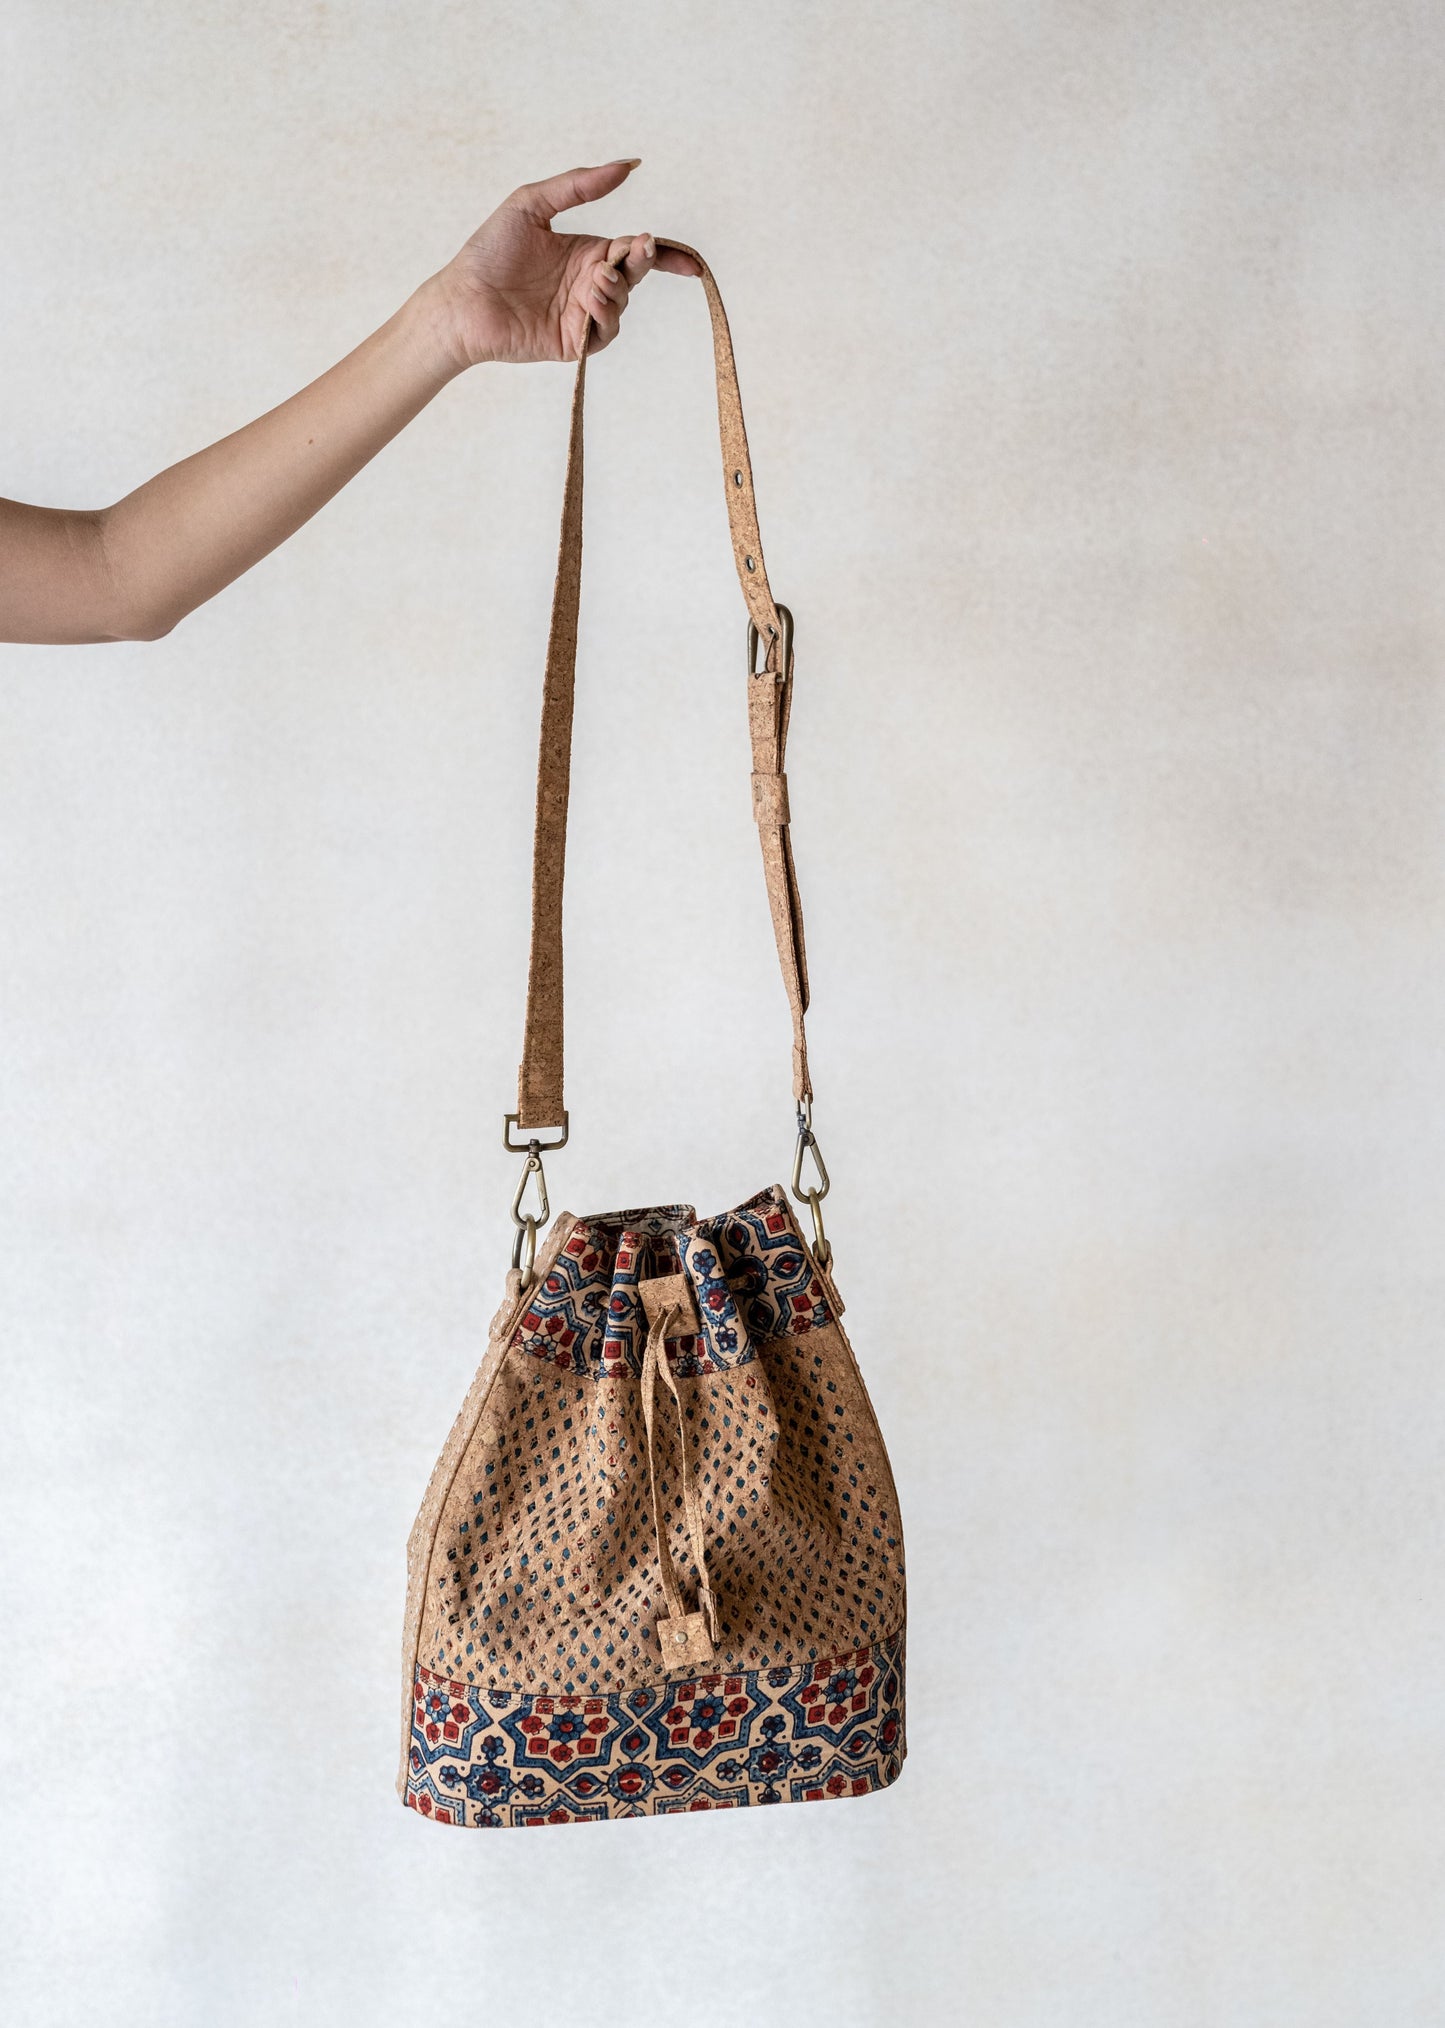 Cork bucket handbag, Handmade luxury cork handbag, Natural cork handbag